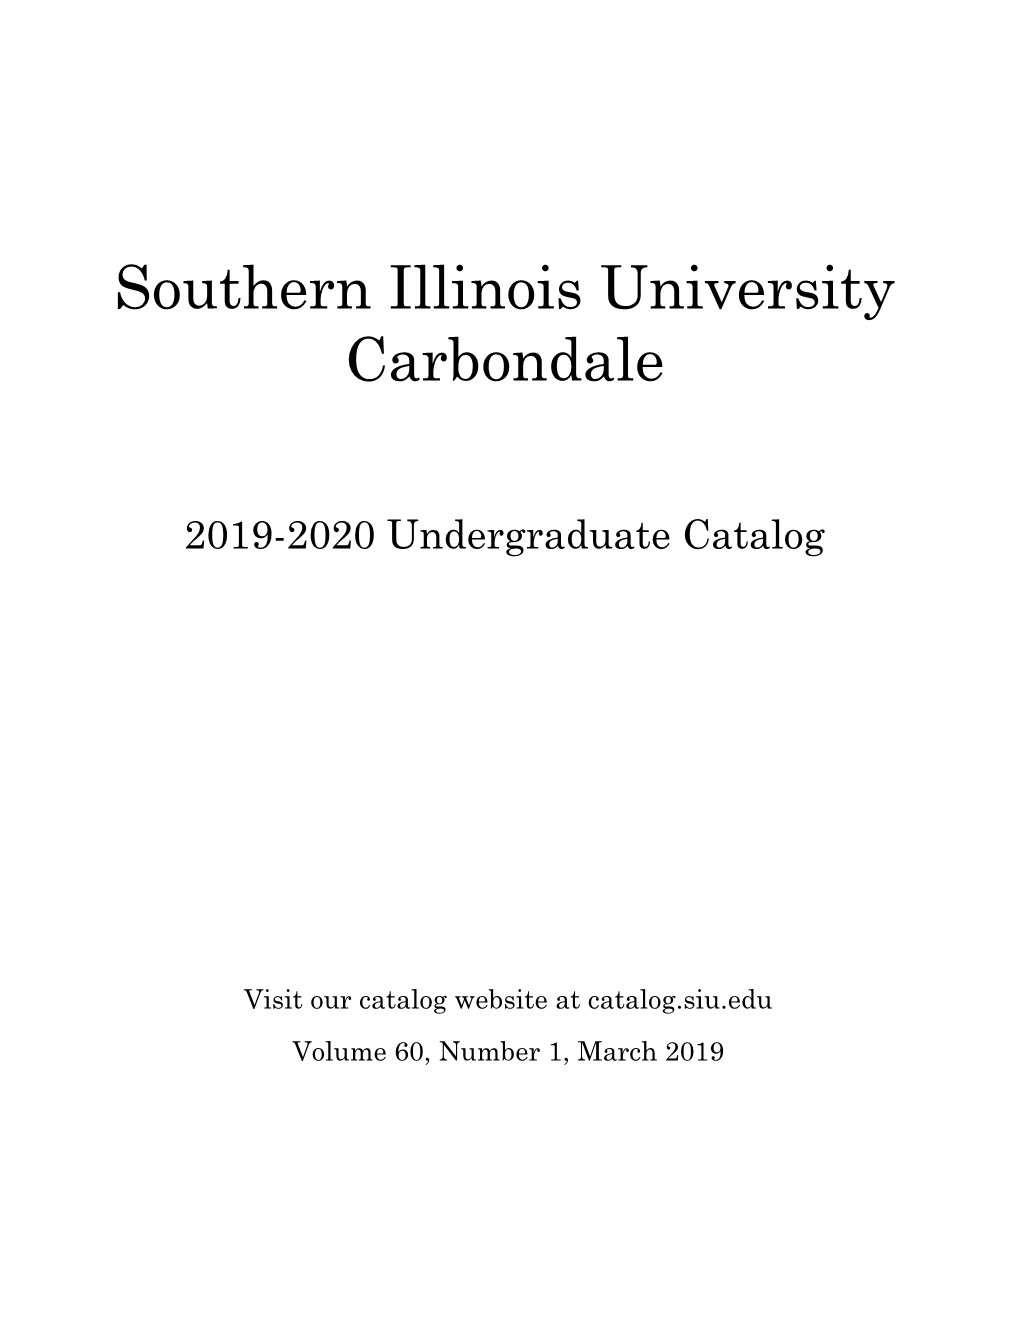 2019-2020 Undergraduate Catalog